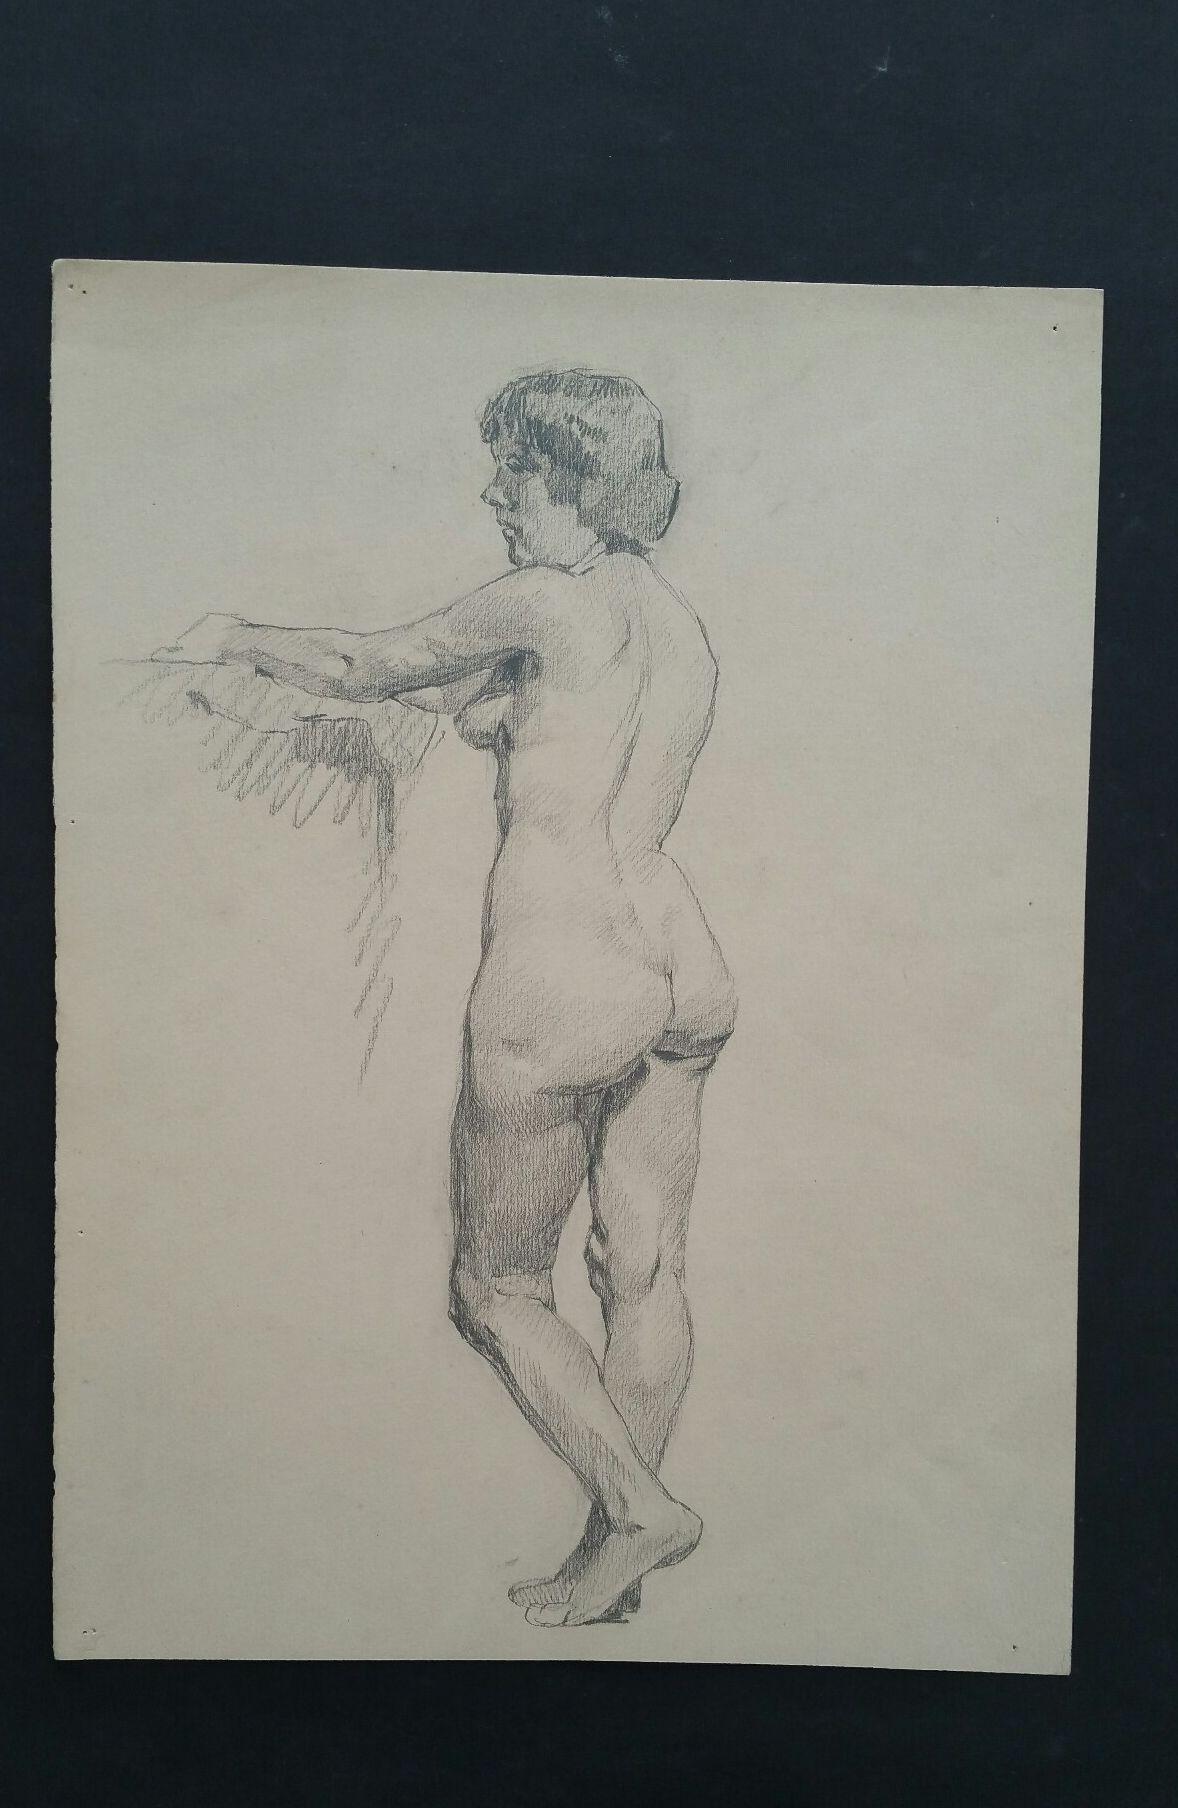 Esquisse au graphite d'une femme nue, debout, en anglais
par Henry George Moon (britannique, 1857-1905)
sur papier d'artiste blanc cassé, non encadré
mesures : feuille 14.5 x 11 pouces 

provenance : de la succession de l'artiste

Rapport de